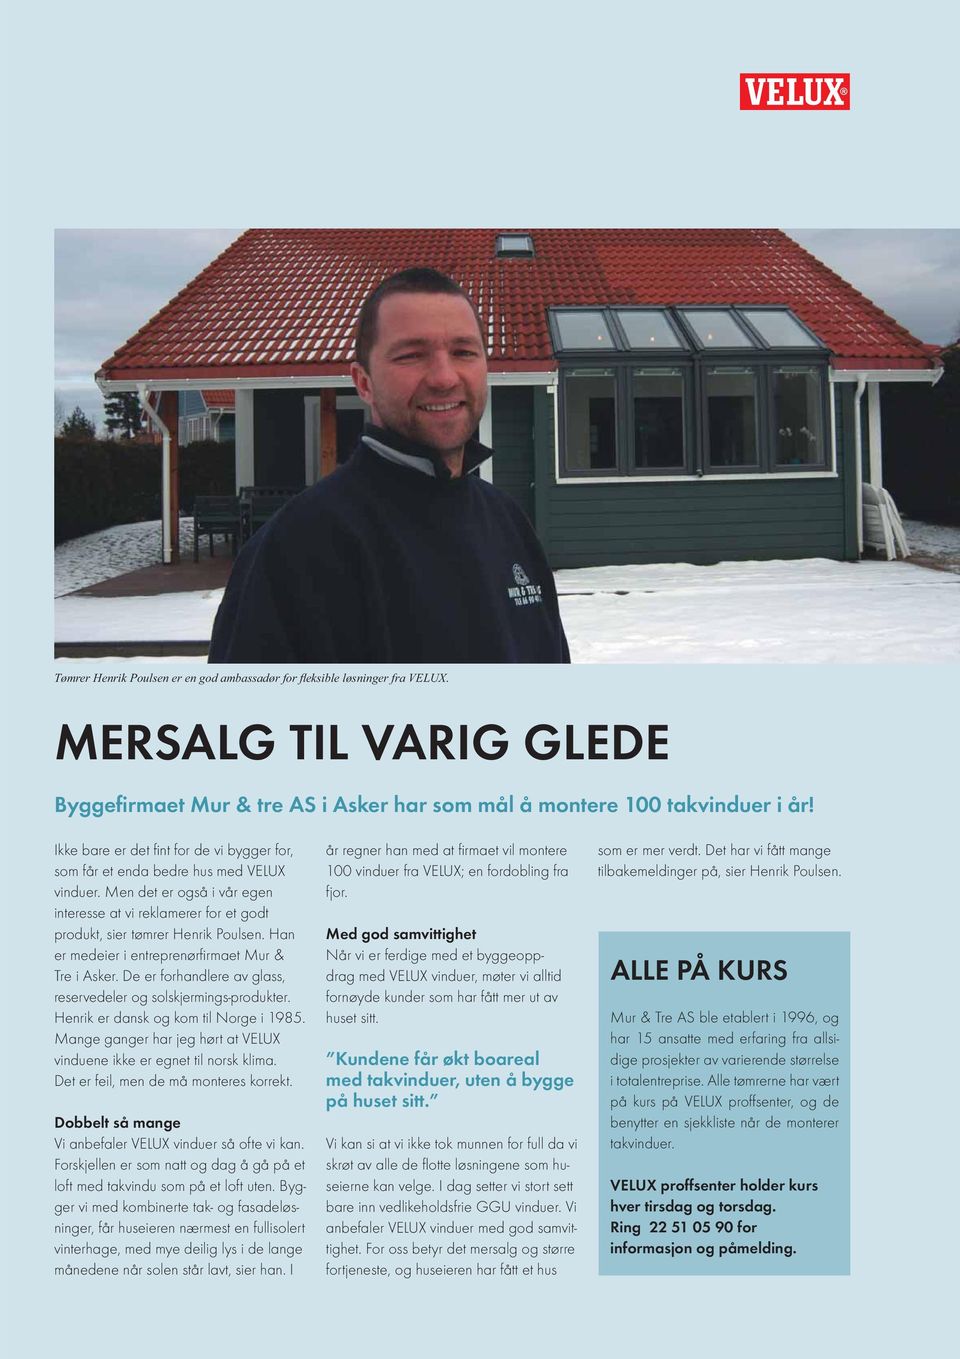 Han er medeier i entreprenørfi rmaet Mur & Tre i Asker. De er forhandlere av glass, reservedeler og solskjermings-produkter. Henrik er dansk og kom til Norge i 1985.